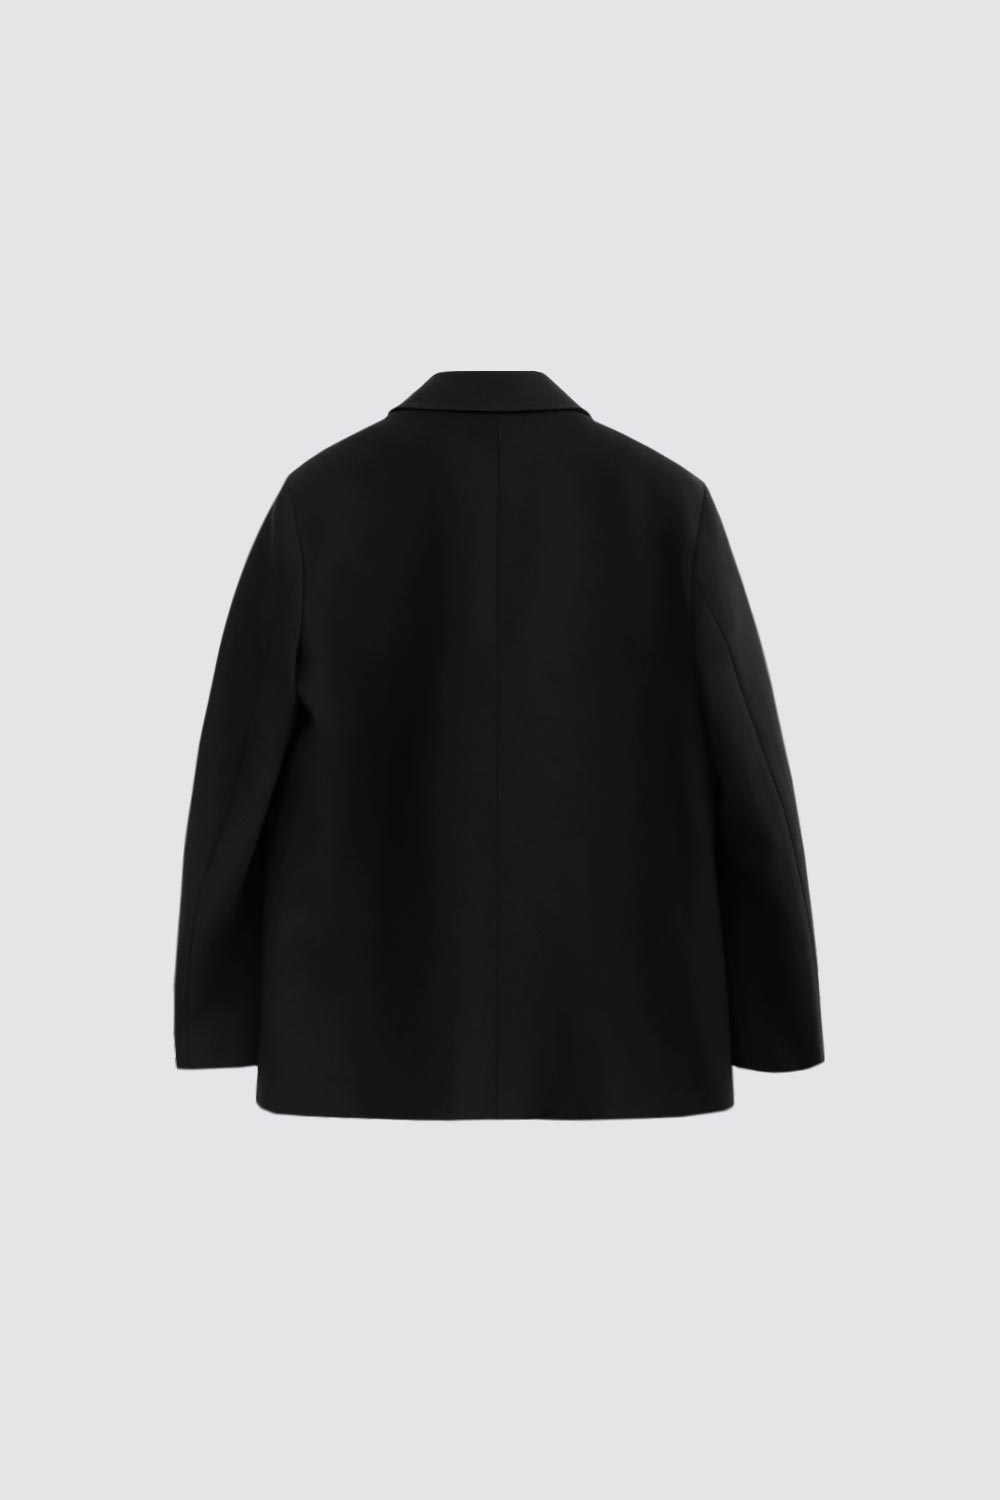 Çift Düğmeli Oversize Blazer Siyah Kadın Ceket